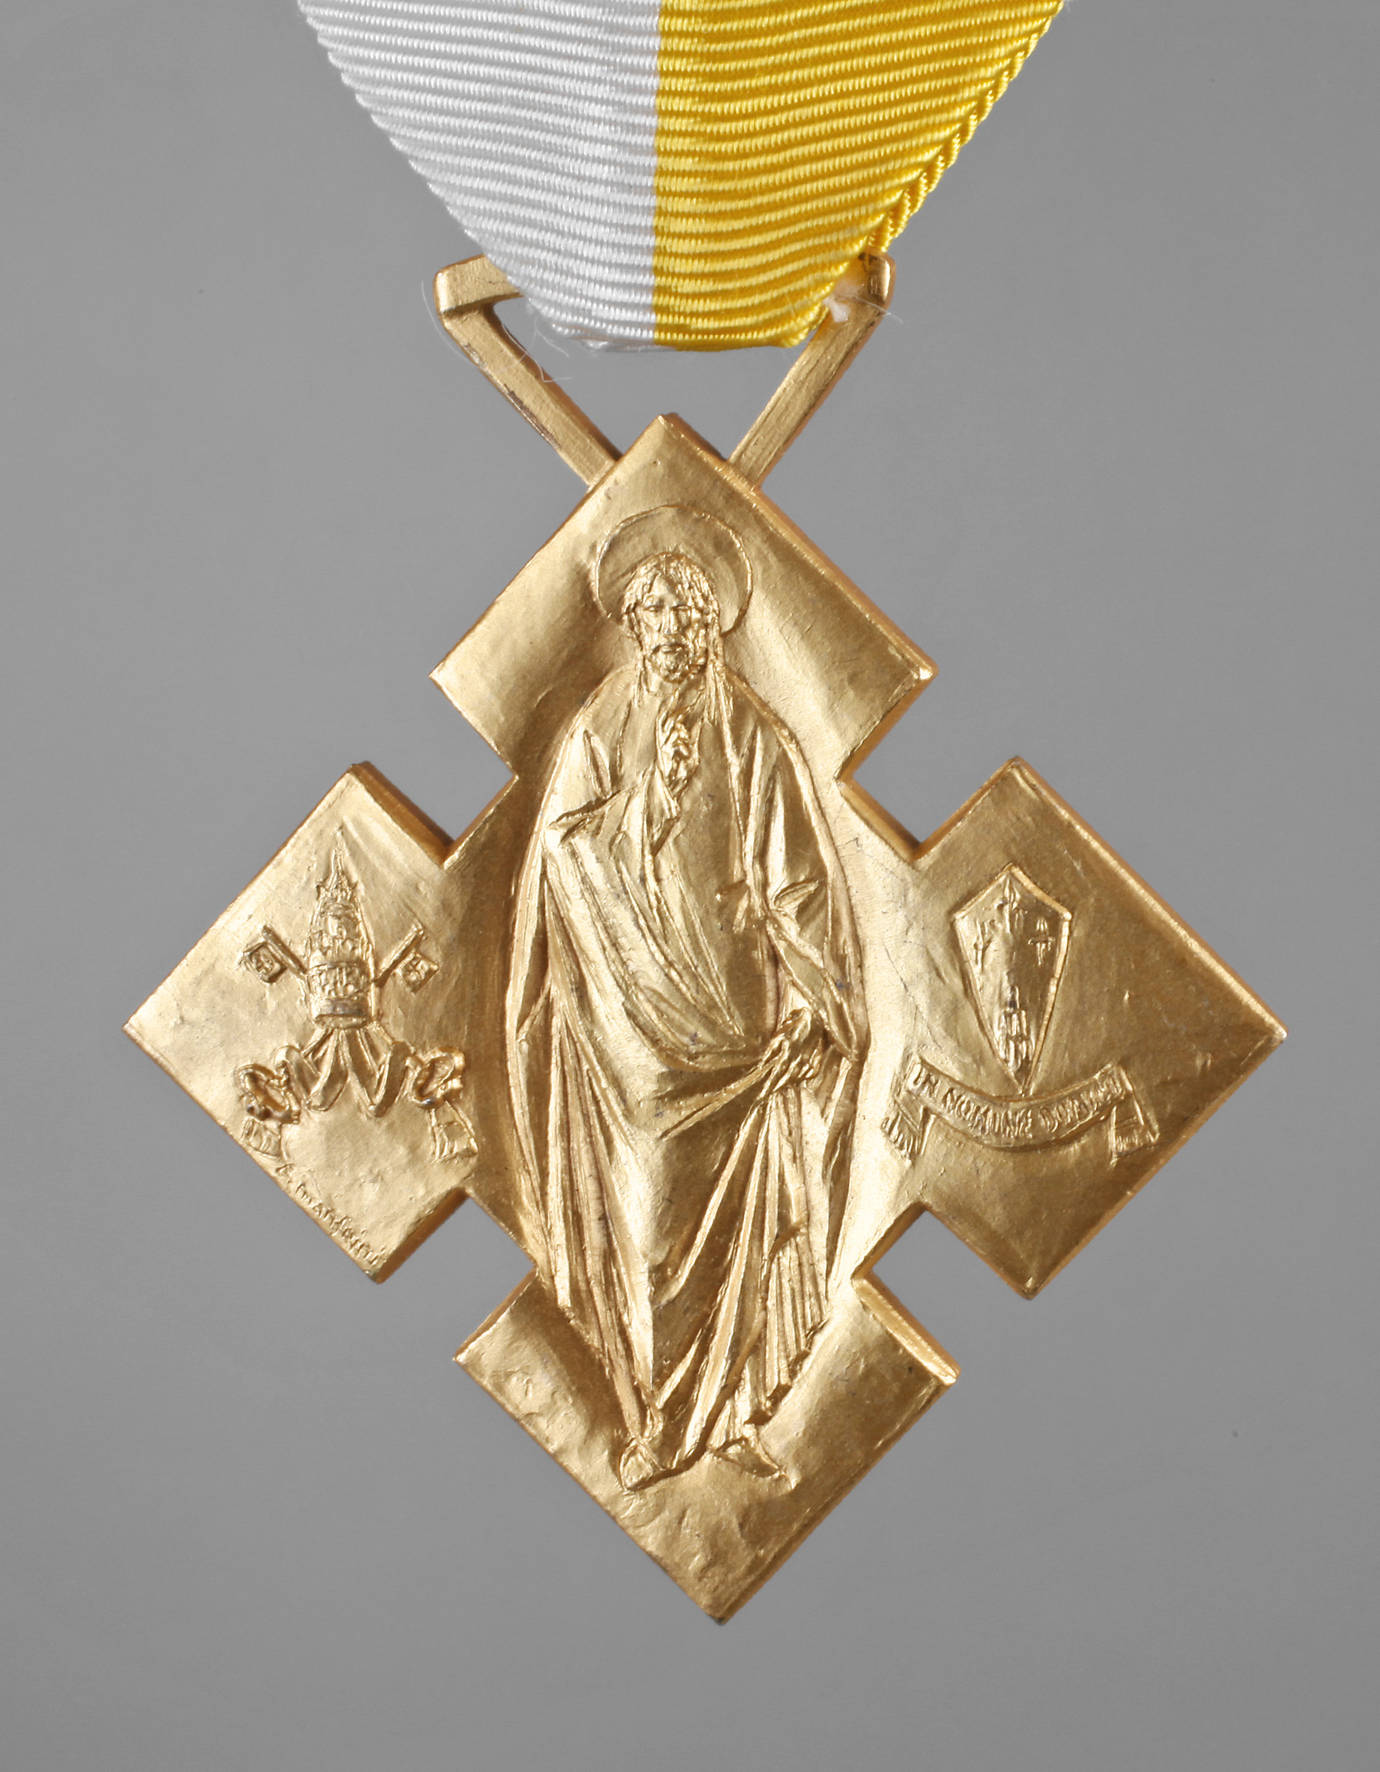 Benemerenti Medaille, Vatikan